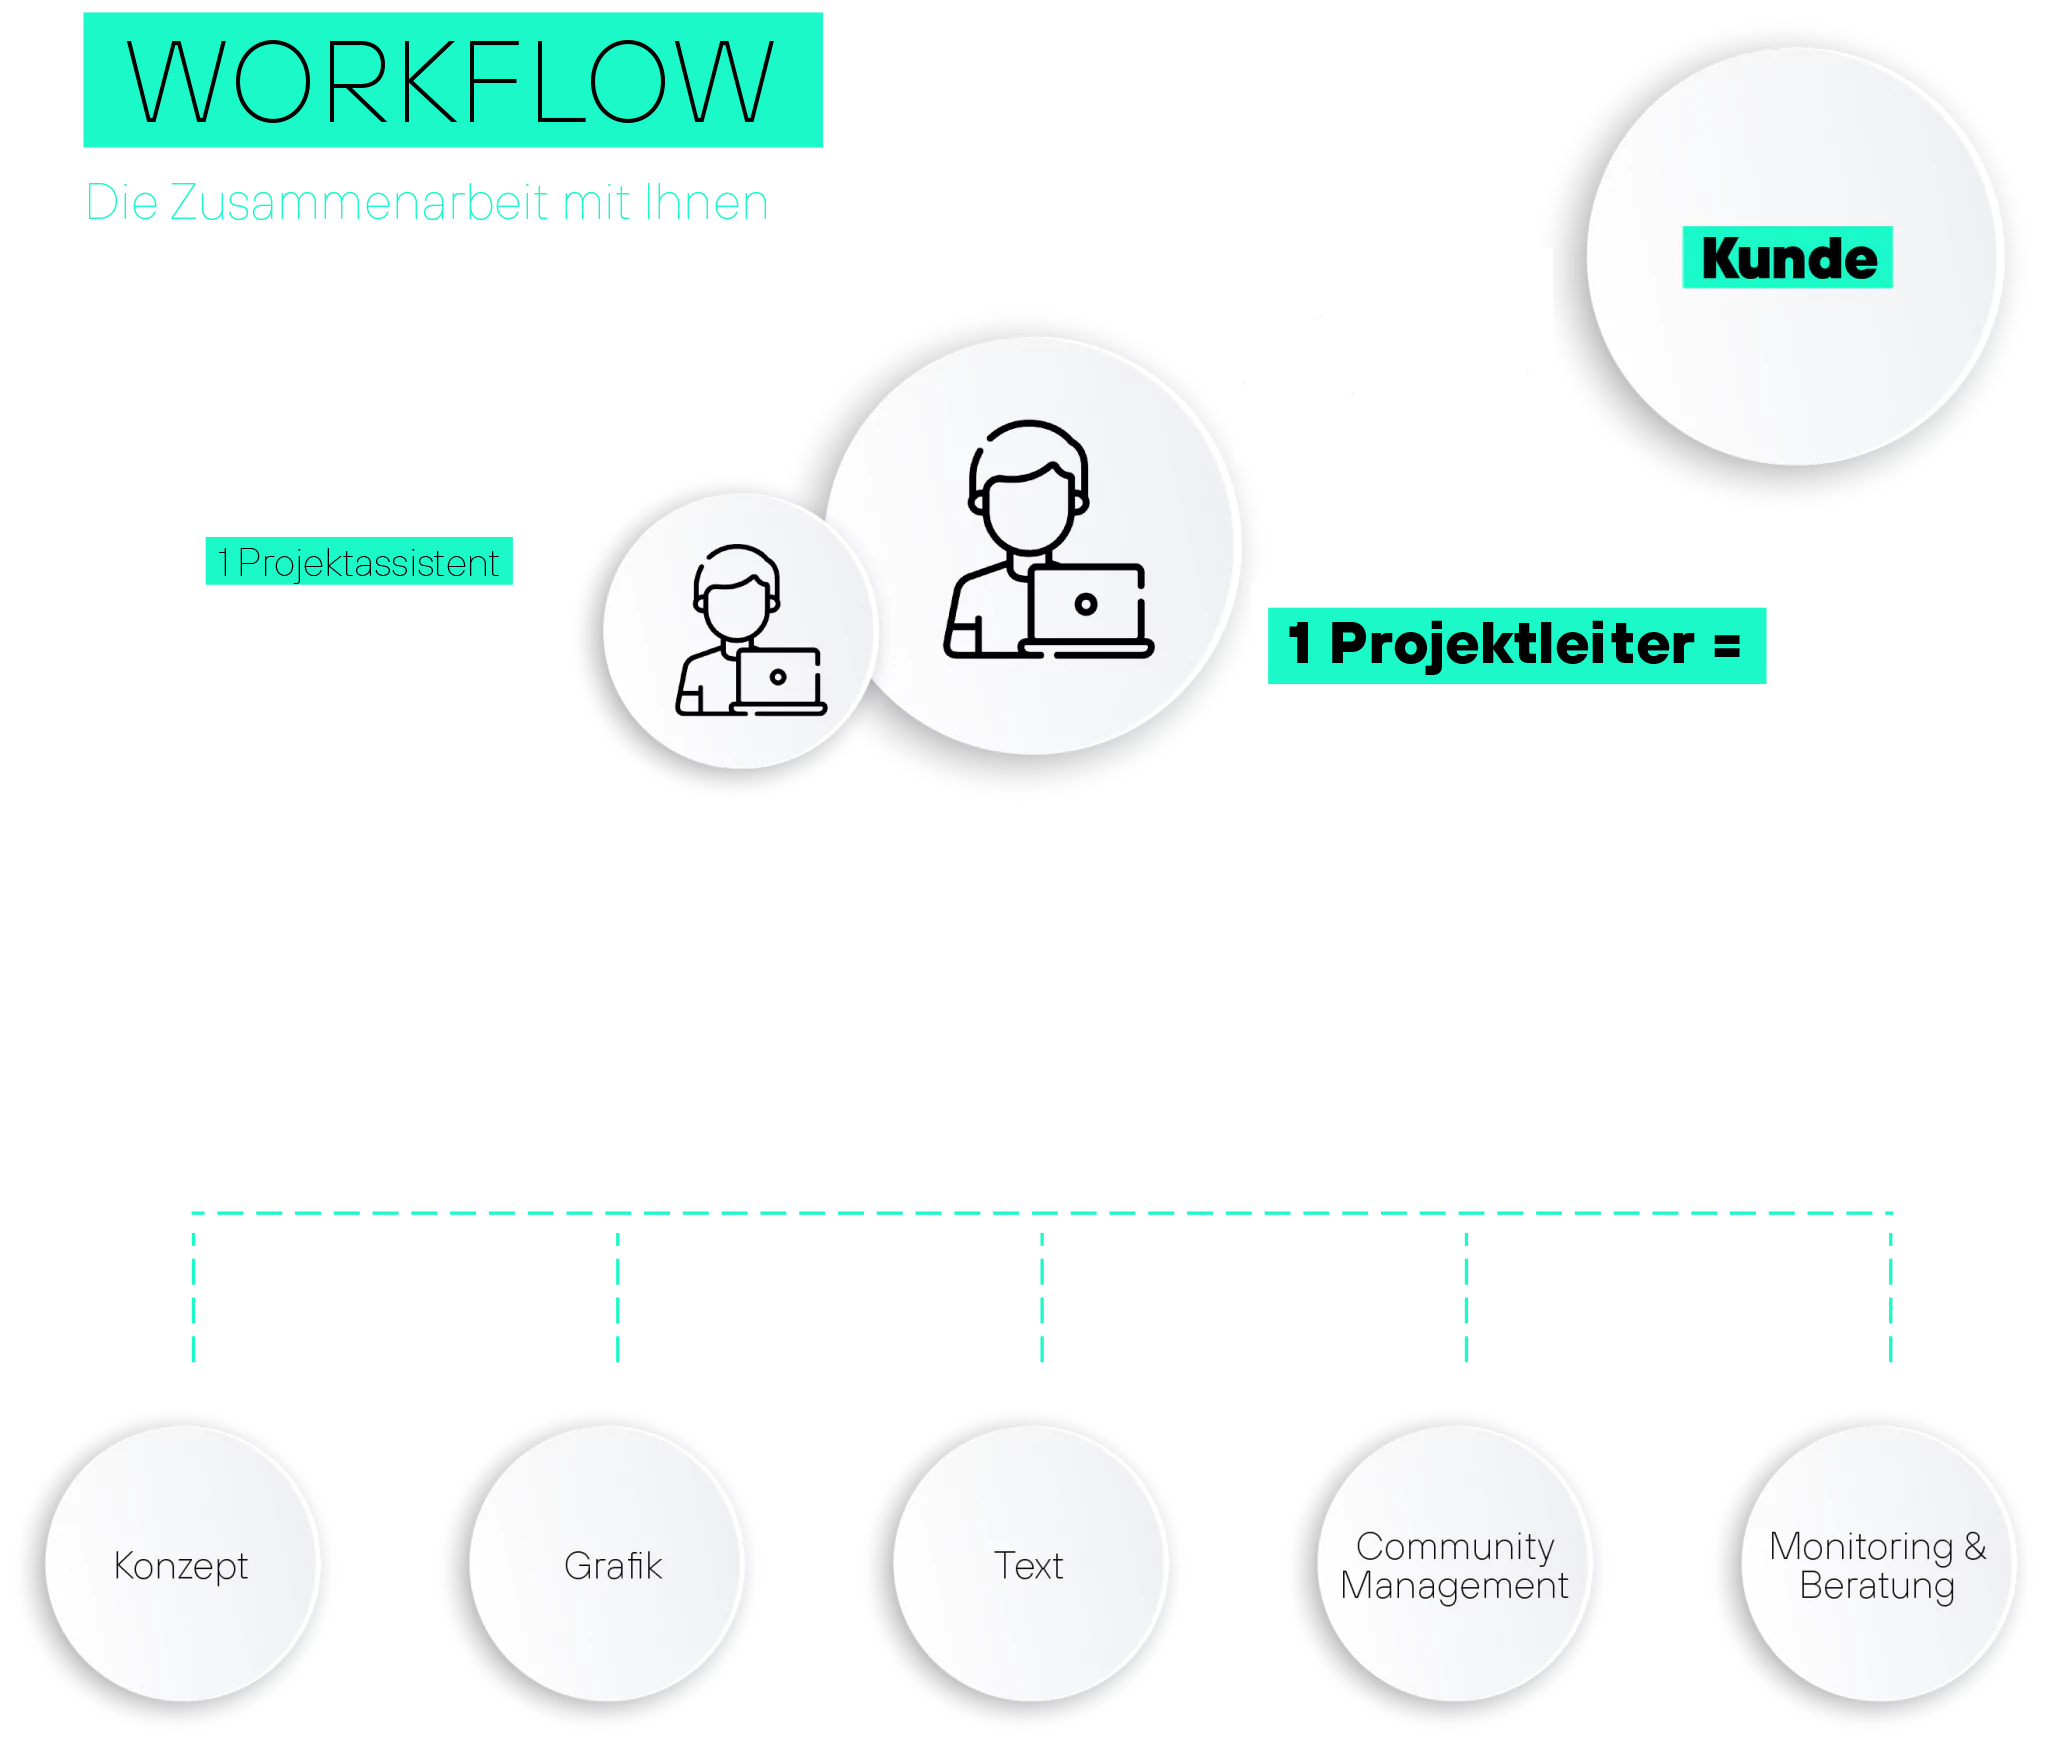 Workflow - Die Zusammenarbeit mit ihnen